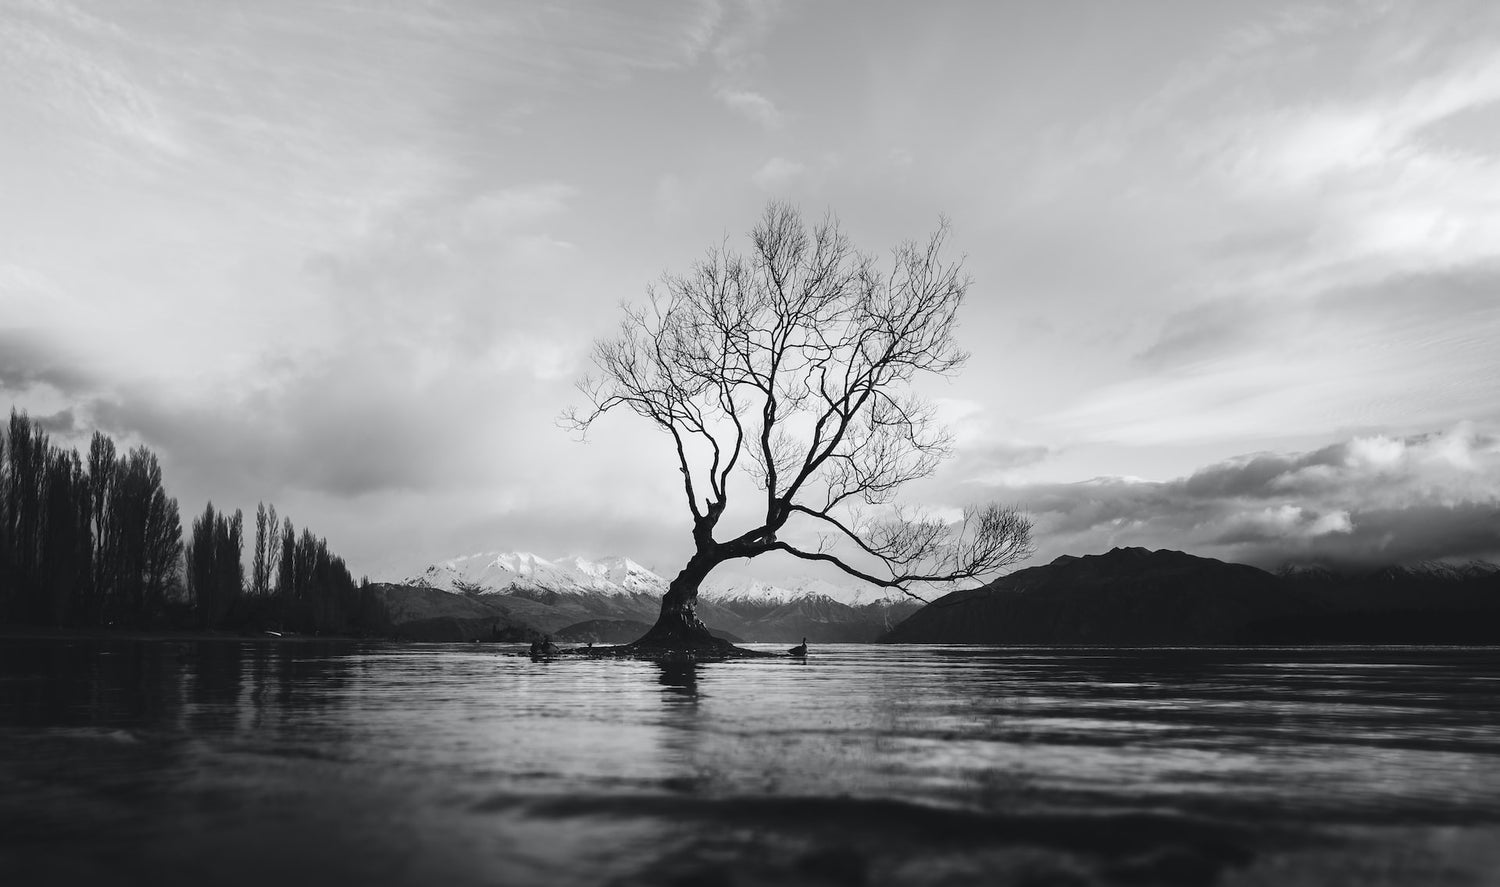 black and white landscape Photo by Erico Marcelino on Unsplash